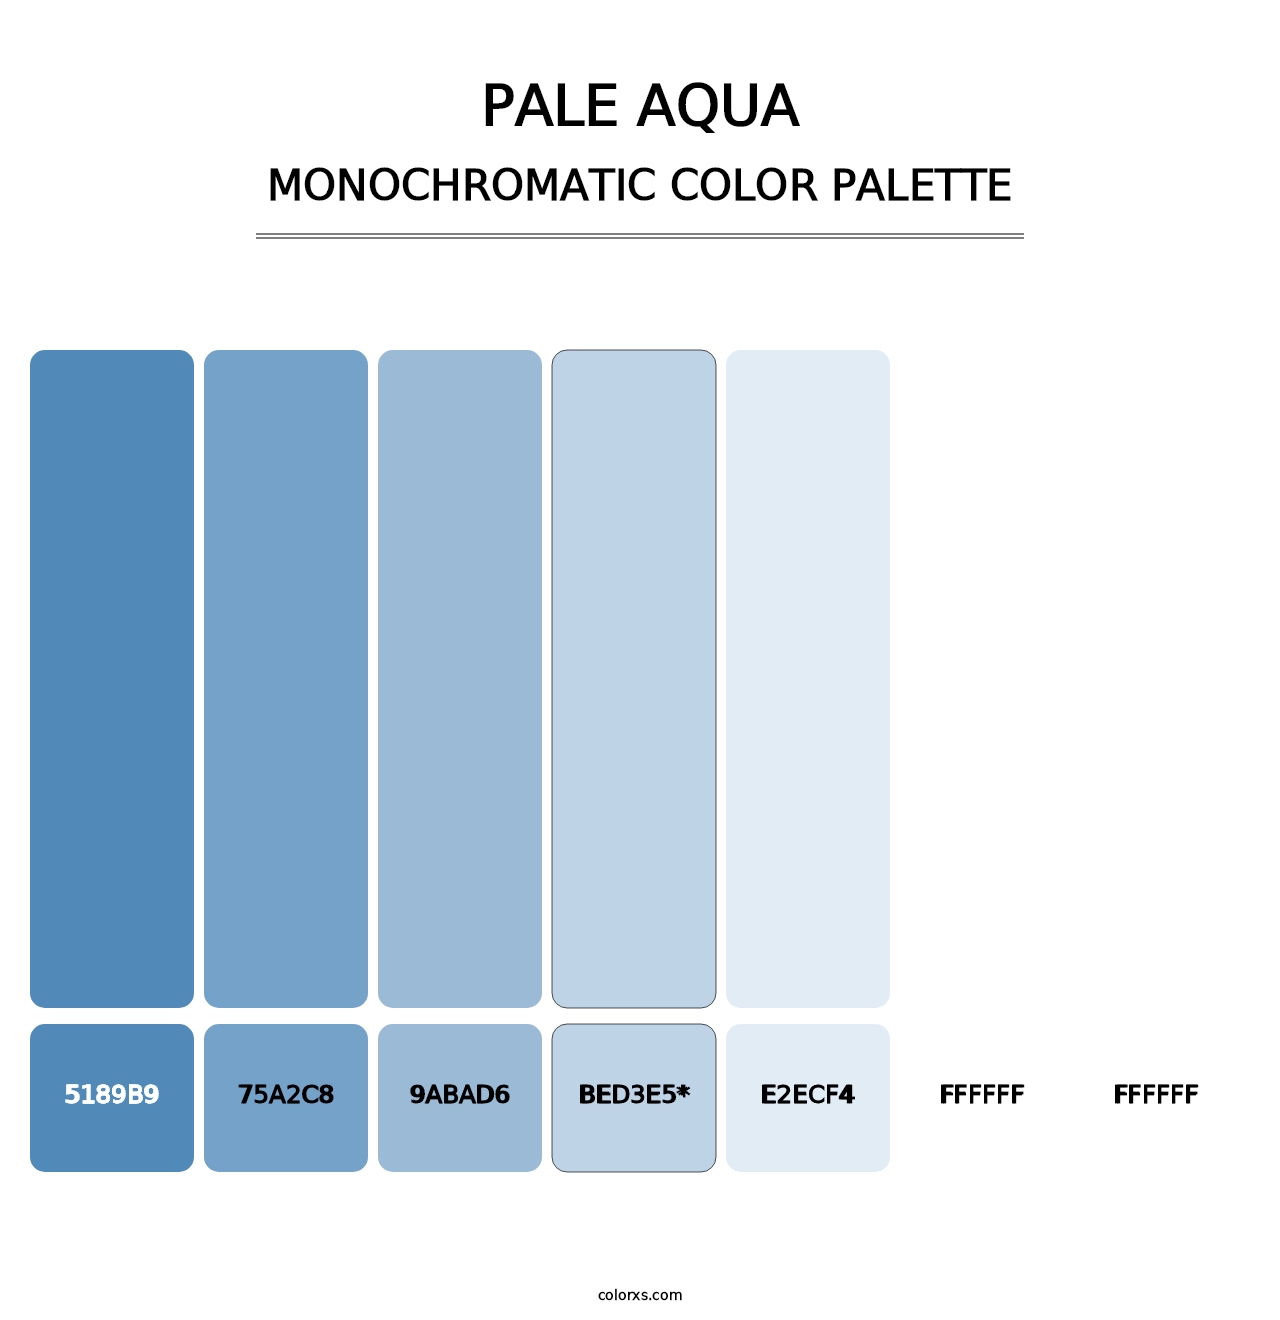 Pale Aqua - Monochromatic Color Palette